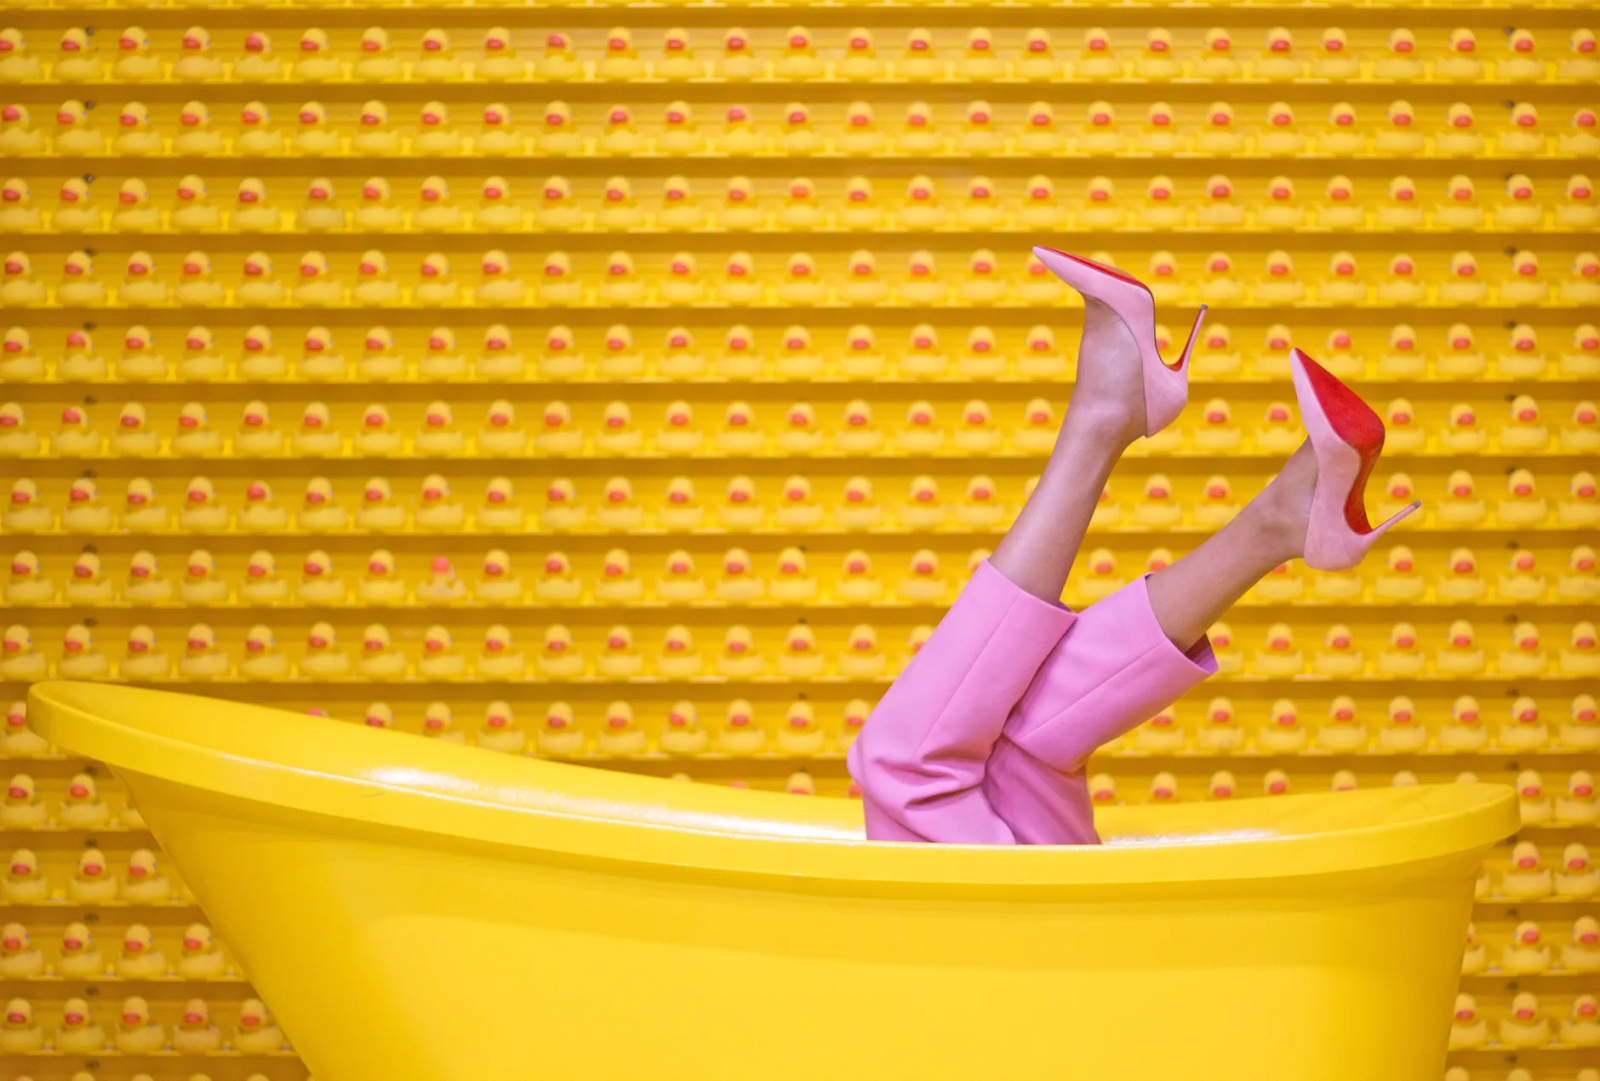 Una mujer vestida de rosa y con zapatos de tacón con suela roja, enseña sus pies metida en una bañera amarilla, sobre un fondo amarillo. Destazan así los zapatos Louboutin.